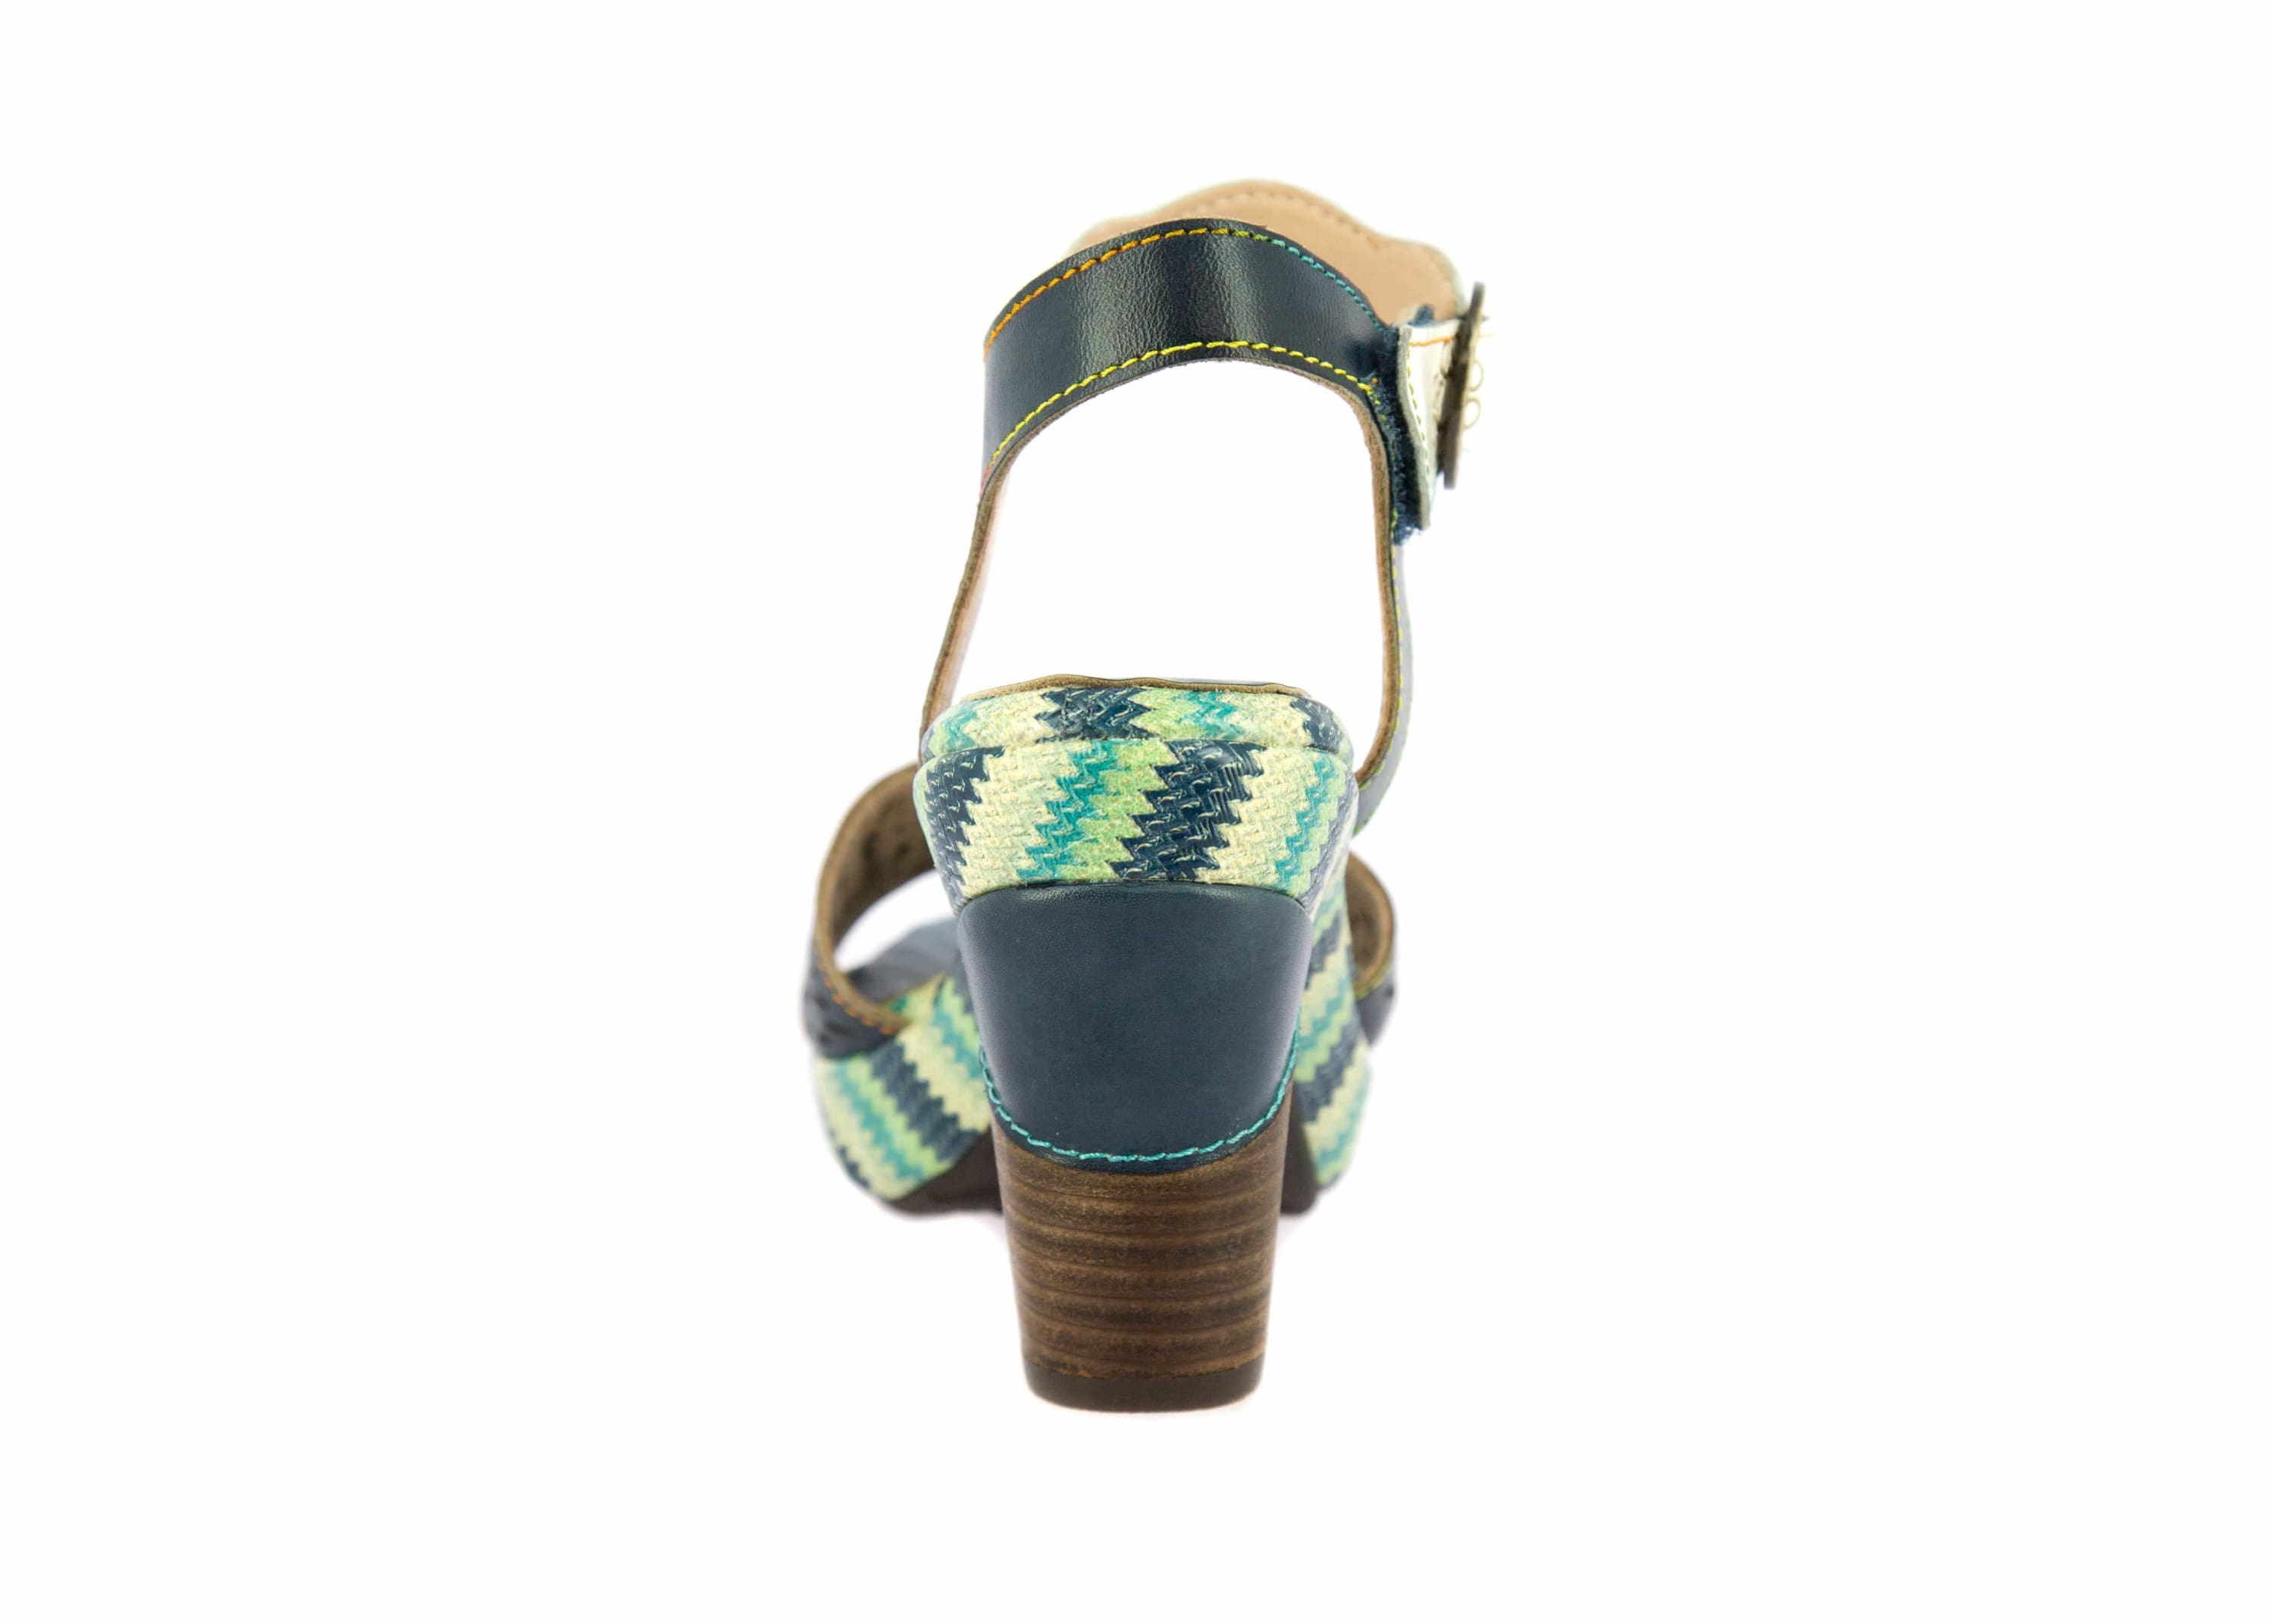 Shoe FICNALO02 - Sandal